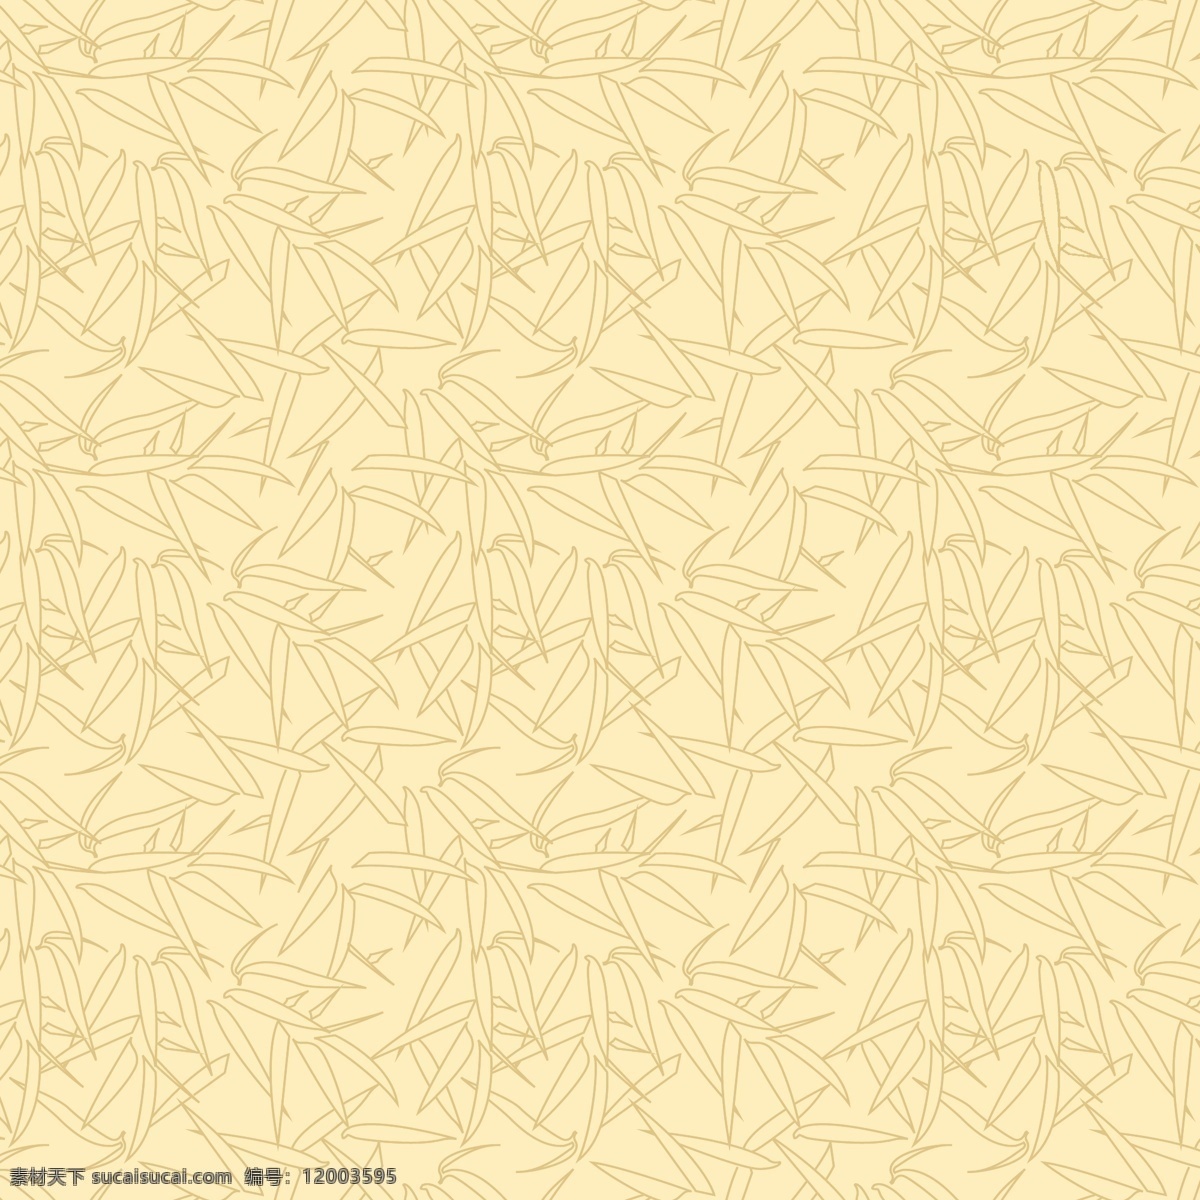 竹叶纹 底纹 竹子 传统元素 竹叶 连续 矢量 底纹边框 背景底纹